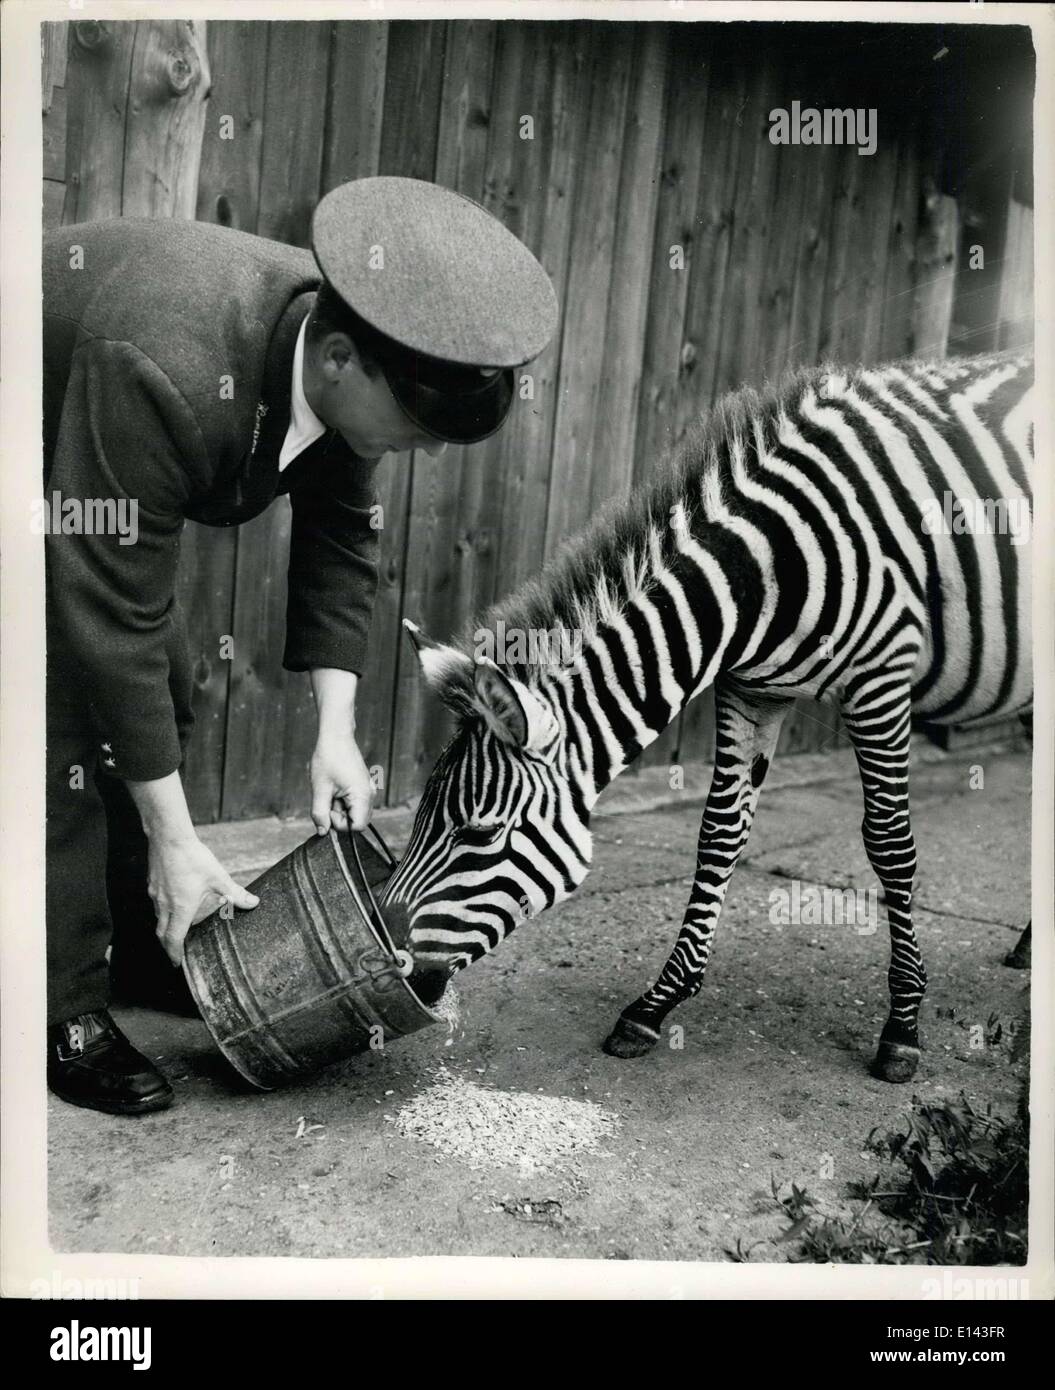 Mar 31, 2012 - Nuovo arrivato whipshde: nuovo arrivo a whimpmade zoo, è questo 10-mesi baby zebra - come ancora senza nome - parte di Foto Stock